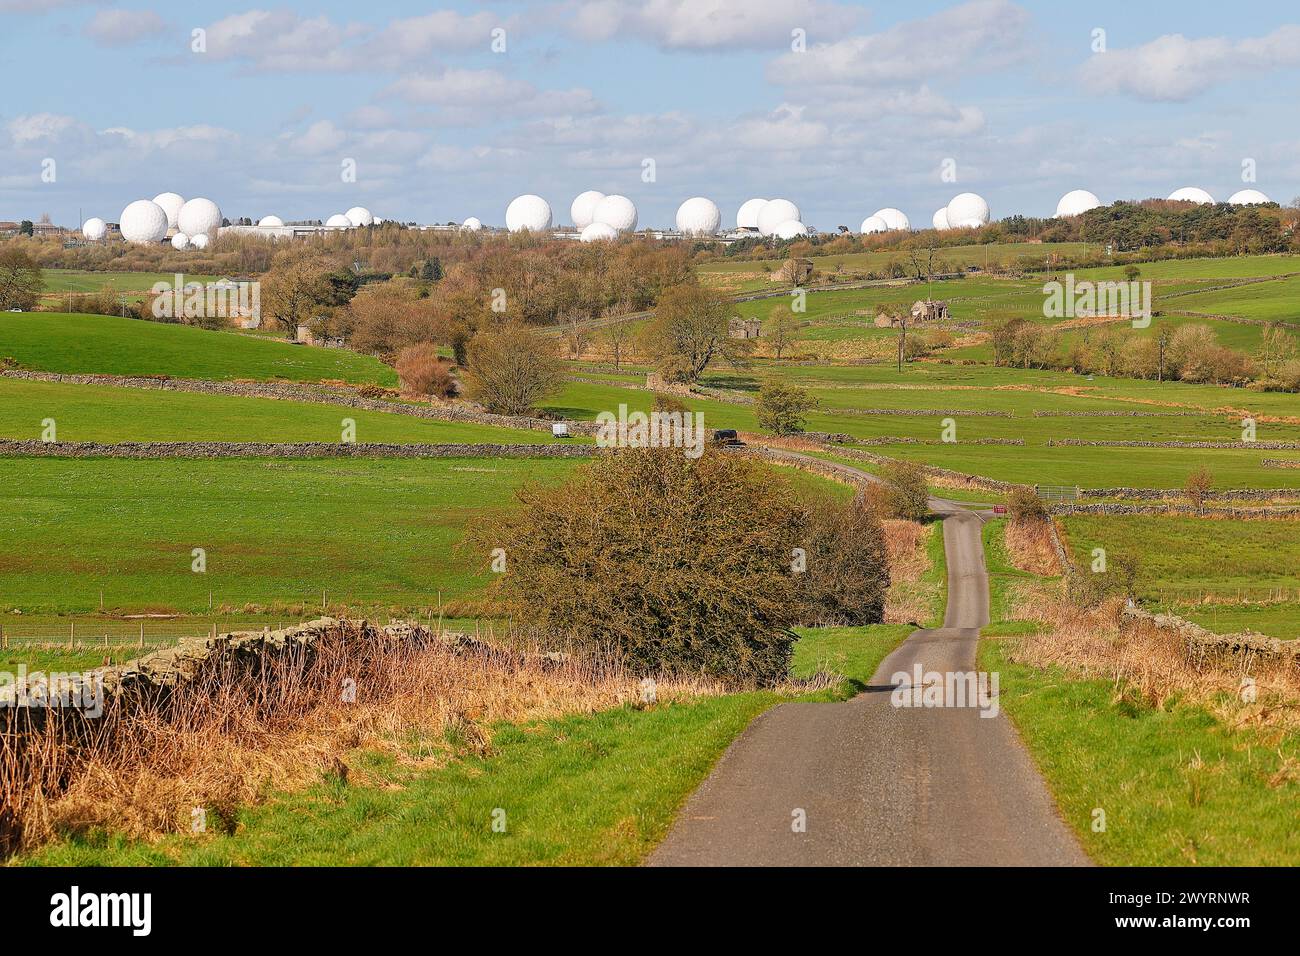 RAF Menwith Hill Listening Station près de Harrogate, North Yorkshire, Royaume-Uni, propriété du ministère de la Défense et exploitée par les forces américaines Banque D'Images